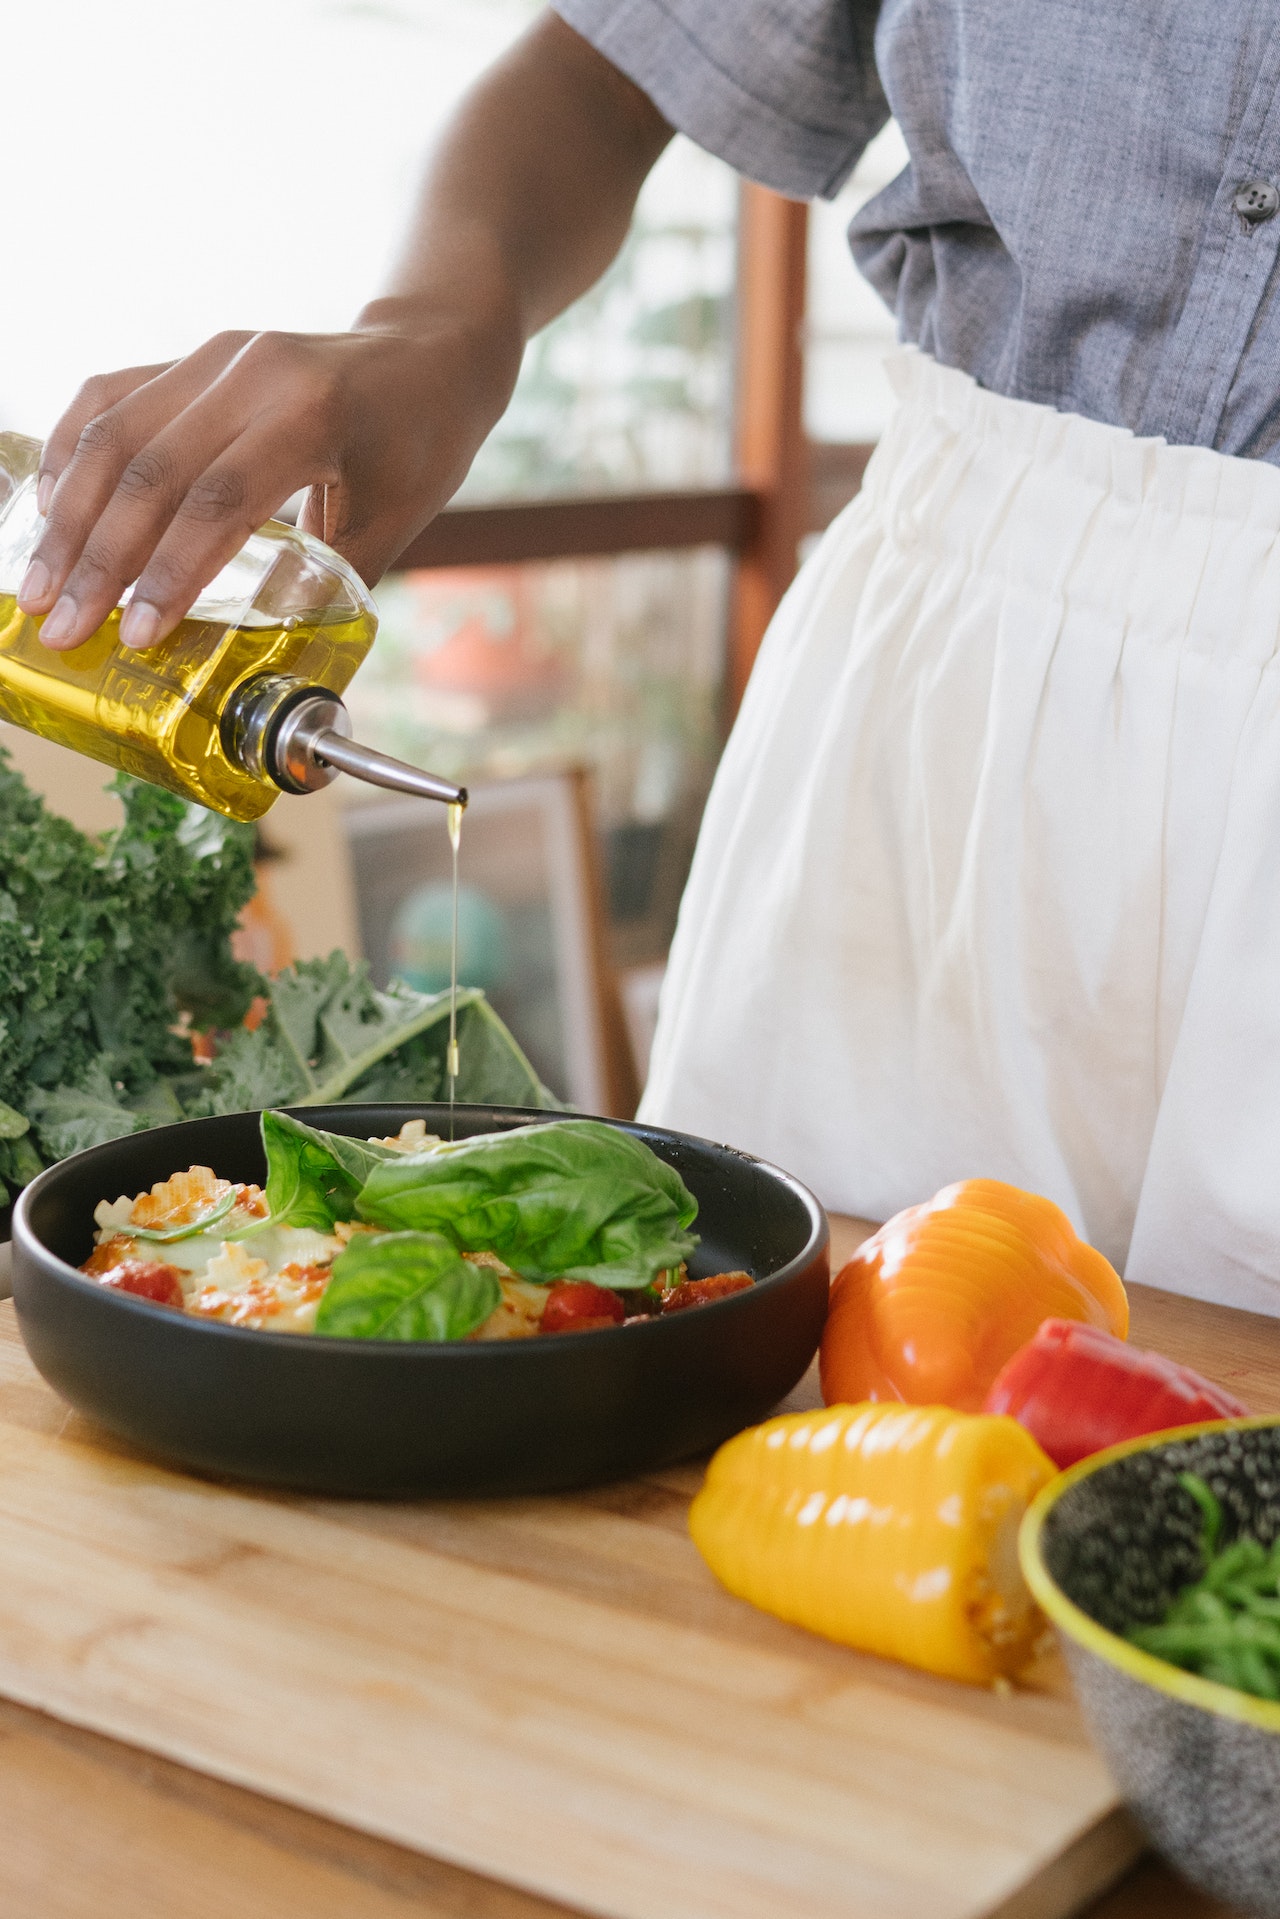 che do an healthy Mediterranean Diet - 5 chế độ ăn “healthy” tốt nhất theo lời khuyên từ chuyên gia